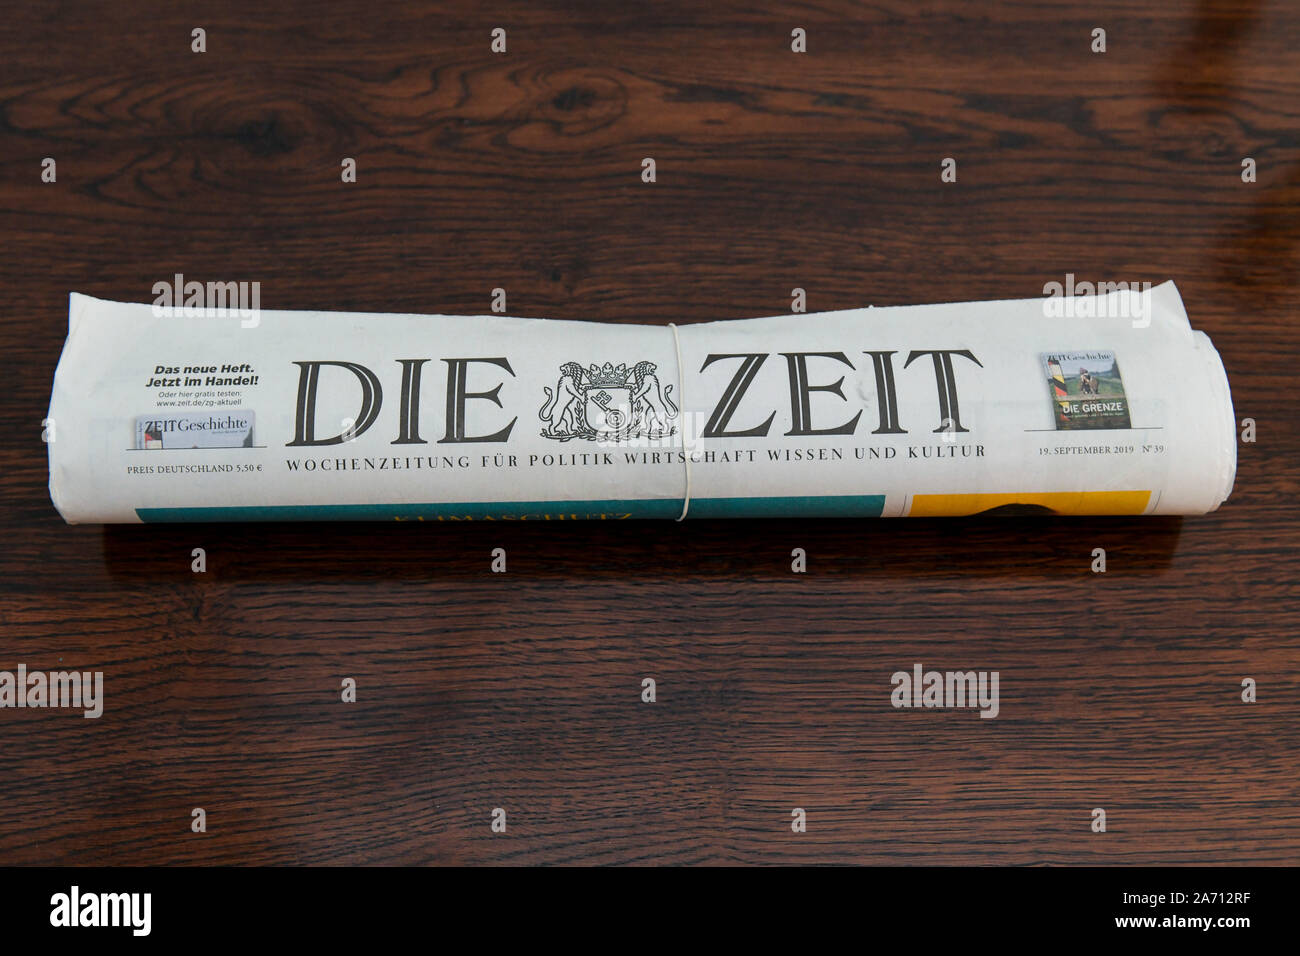 Wochenzeitung 'Die Zeit' Stock Photo